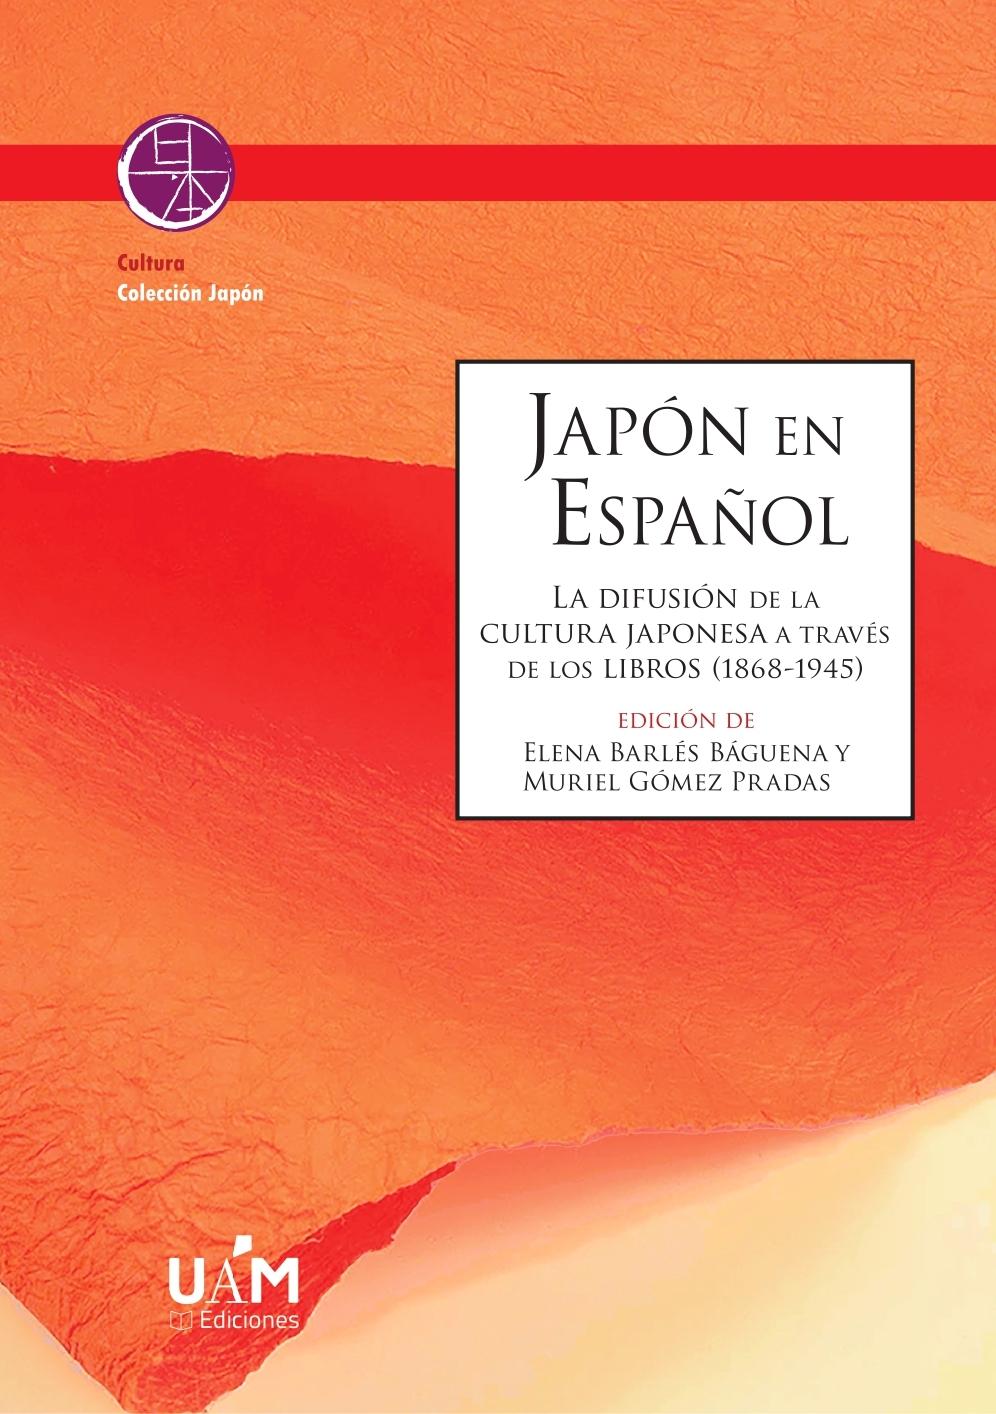 JAPON EN ESPAÑOL "La difusión de la cultura japonesa a través de los libros (1868-1945)"